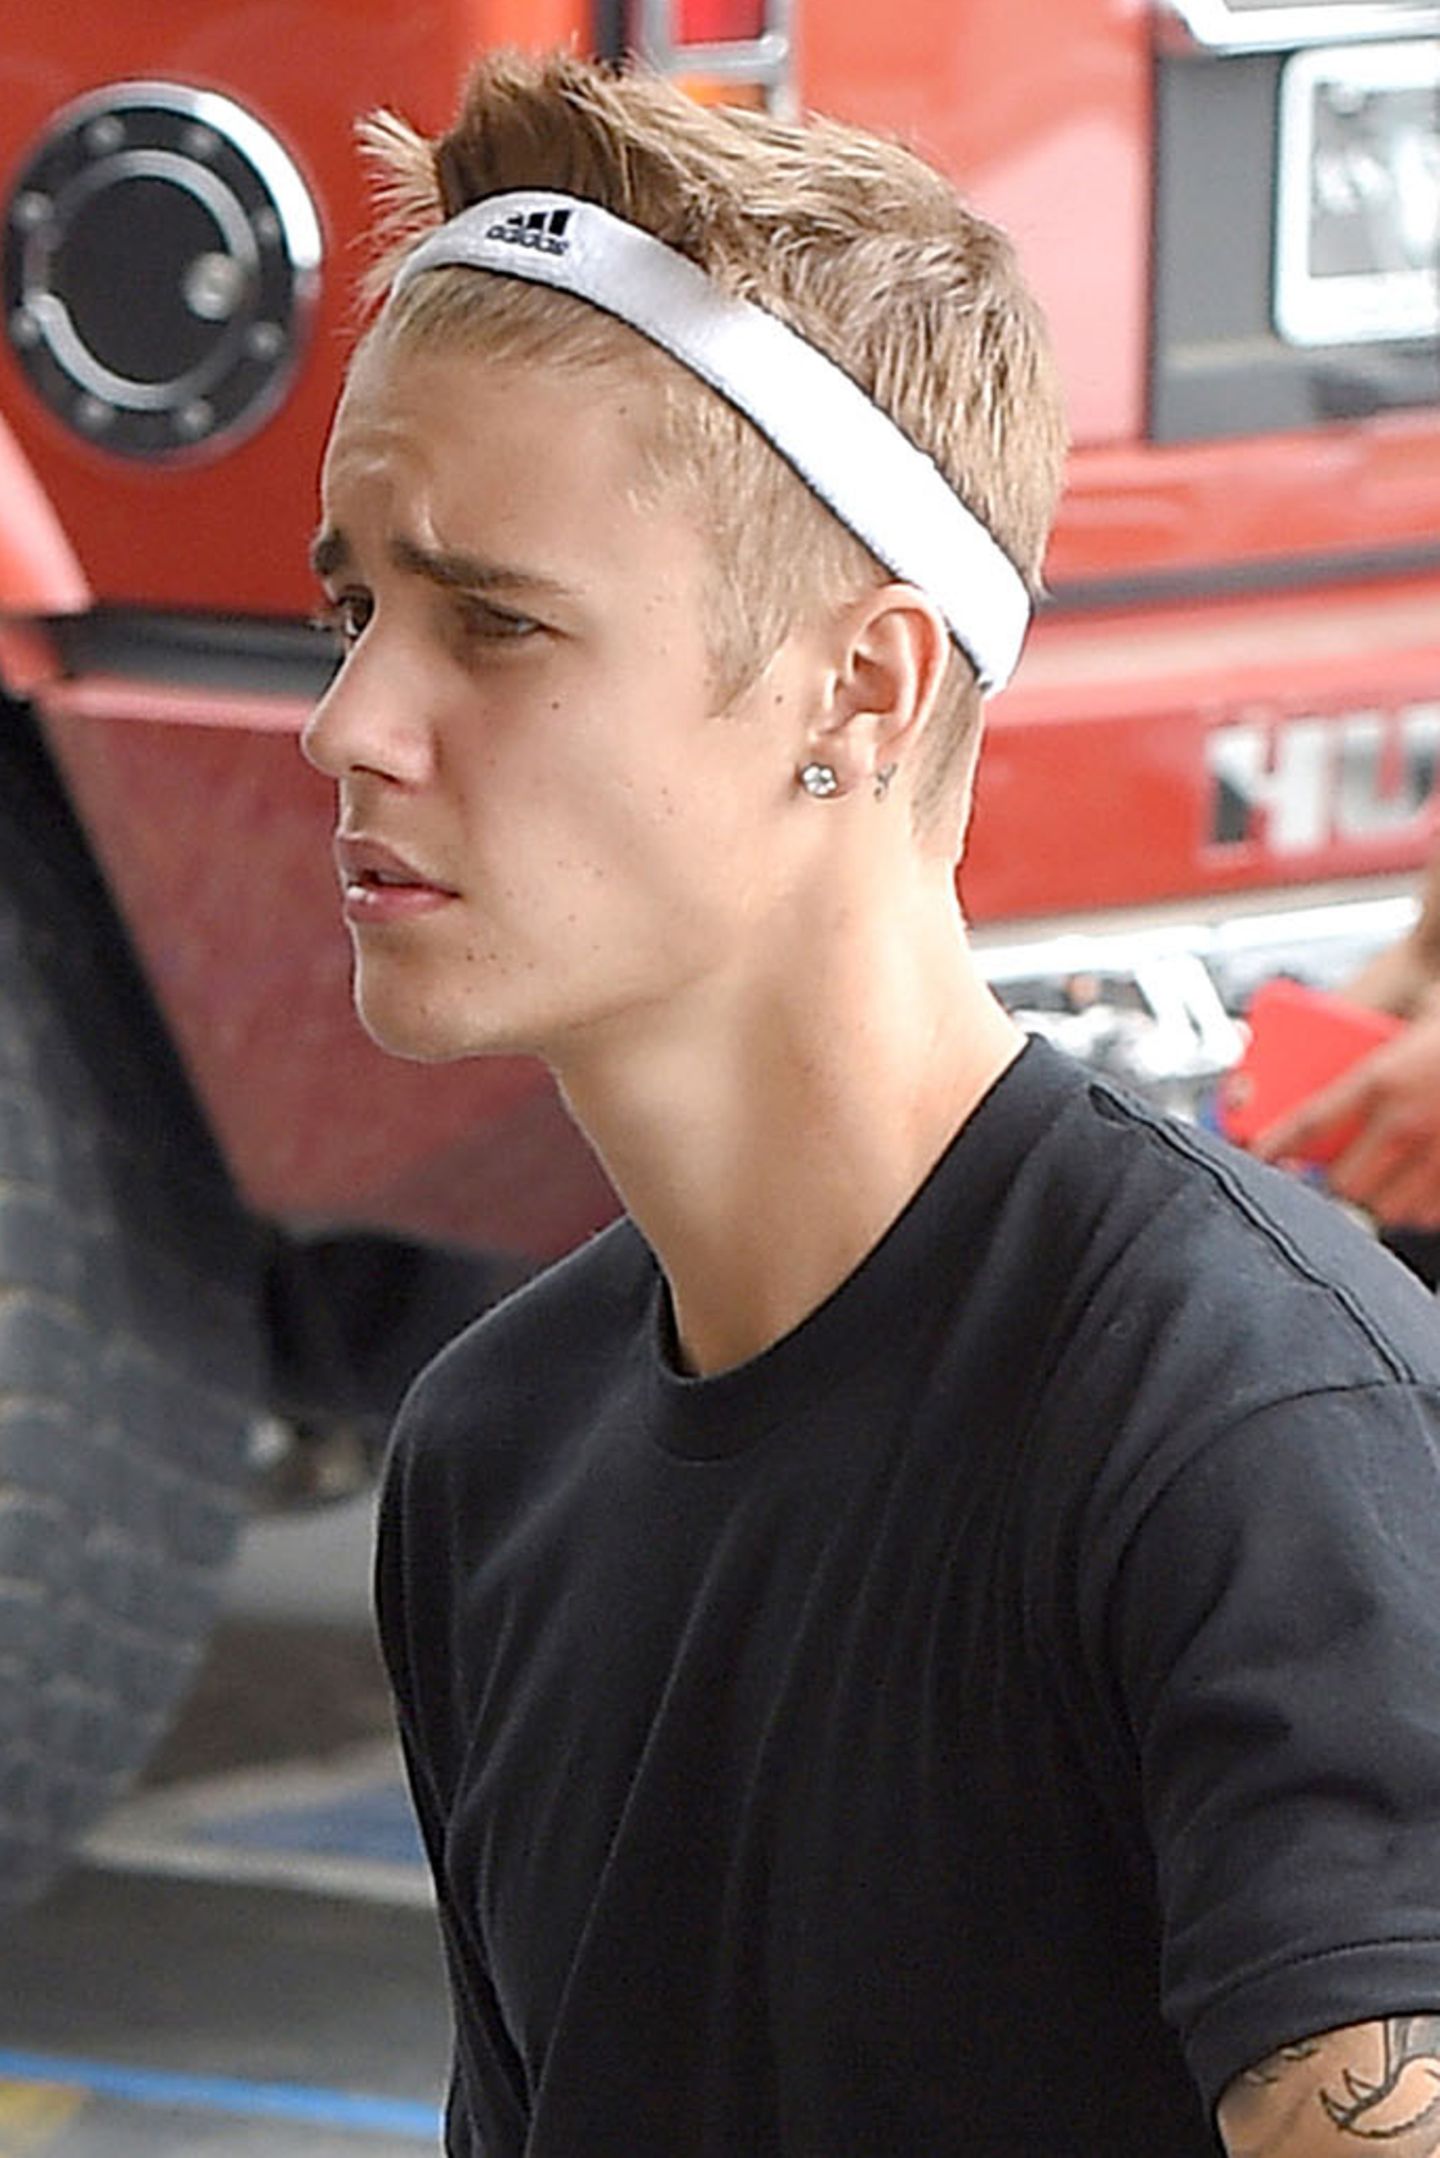 Oktober 2014: Auch Männer wie Justin Bieber möchten mal ihren Pony aus dem Gesicht haben! Mit einem Schweißband um den Kopf verschafft sich der Sänger freie Sicht.